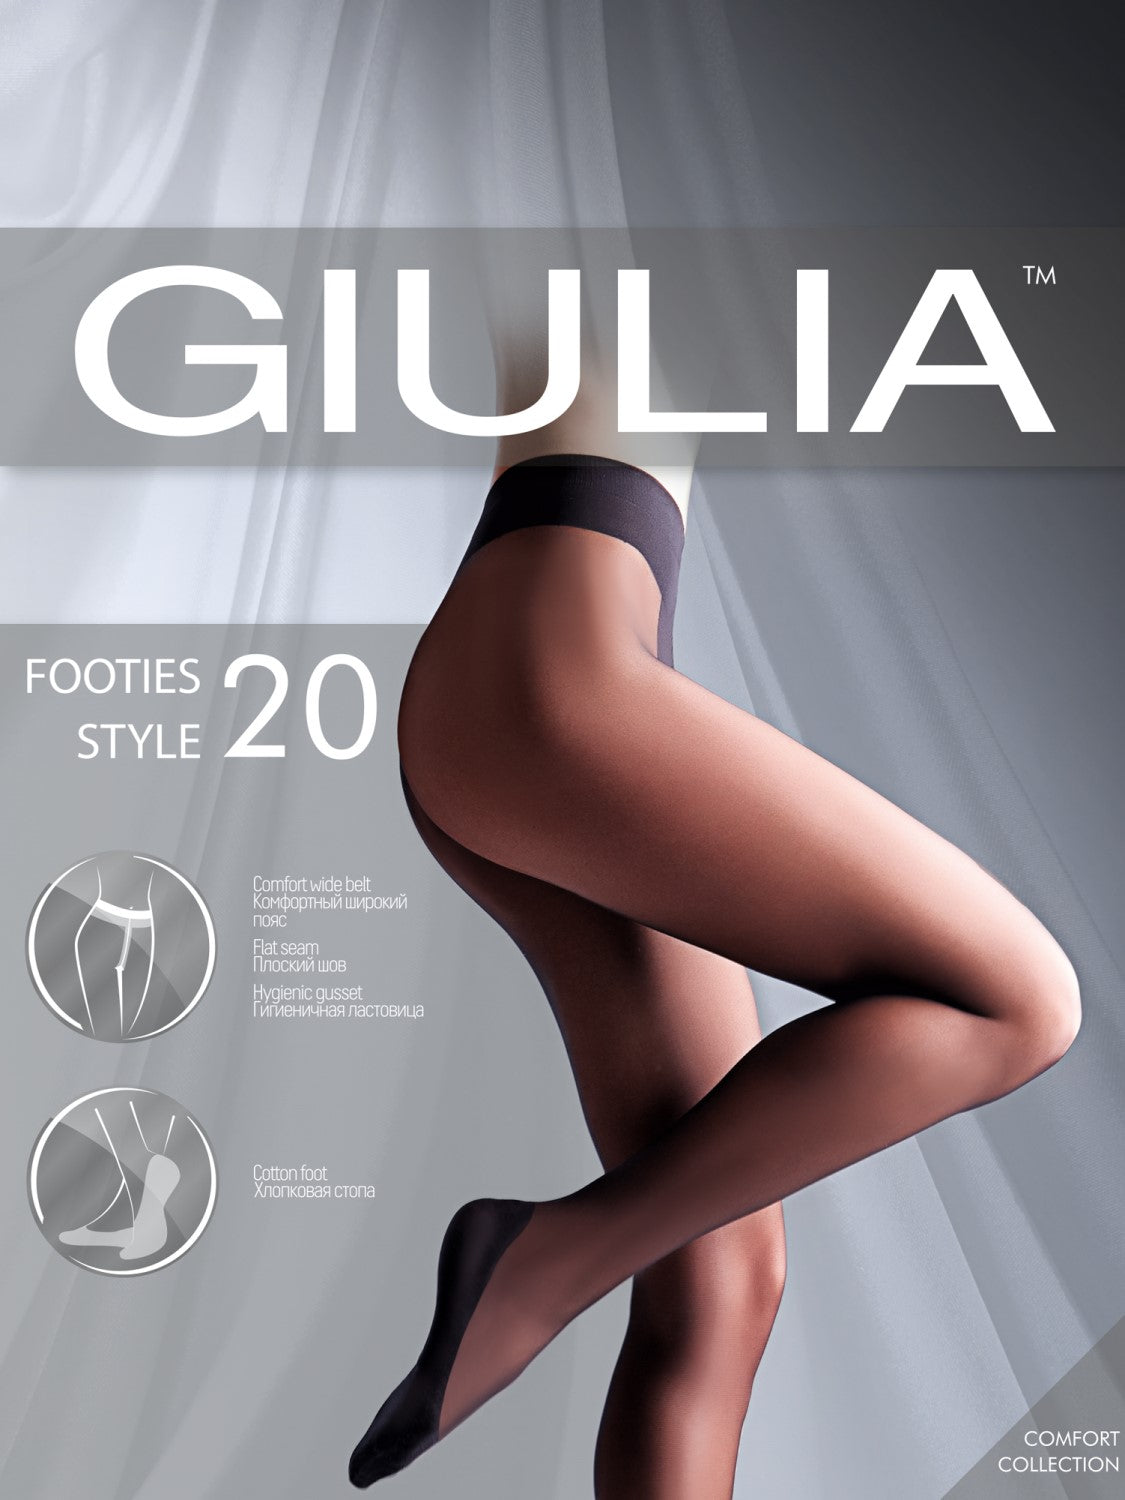 Giulia Slim 20 Shaping Tights In Stock At UK Tights